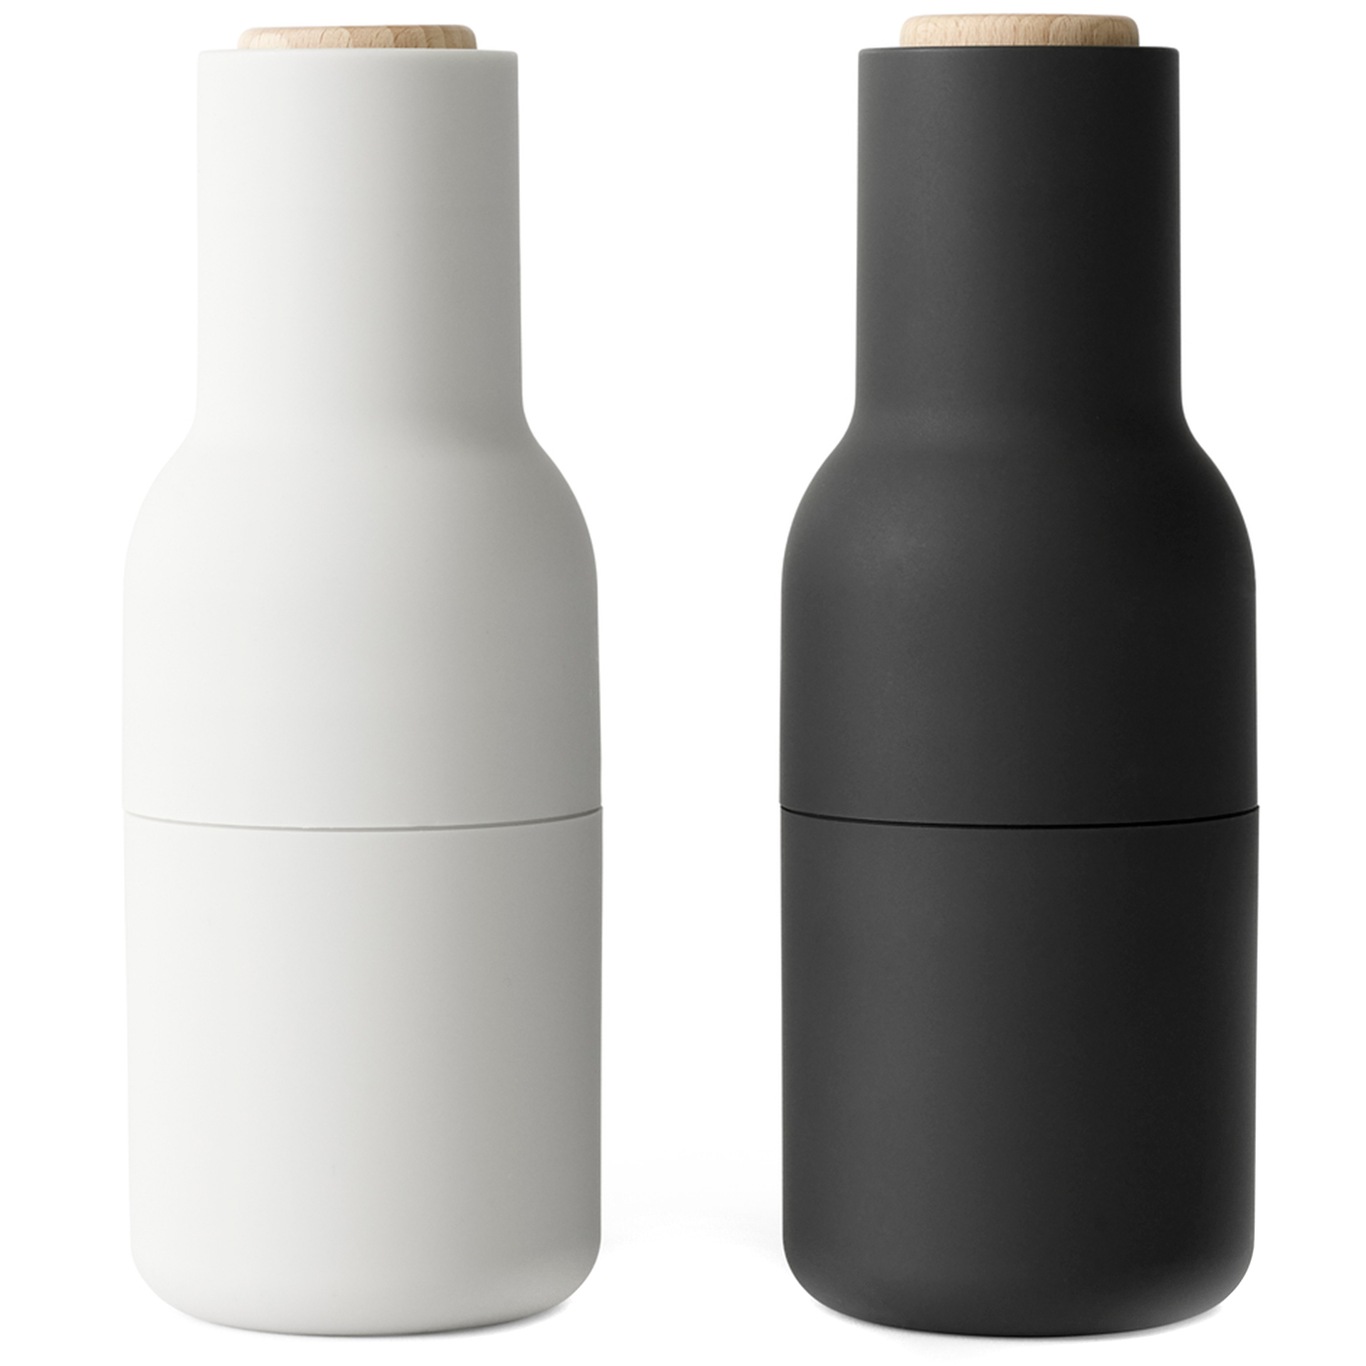 Bottle Grinder Maustemylly 2 kpl:n pakkaus, Saarni / Carbon / Pyökinvärinen